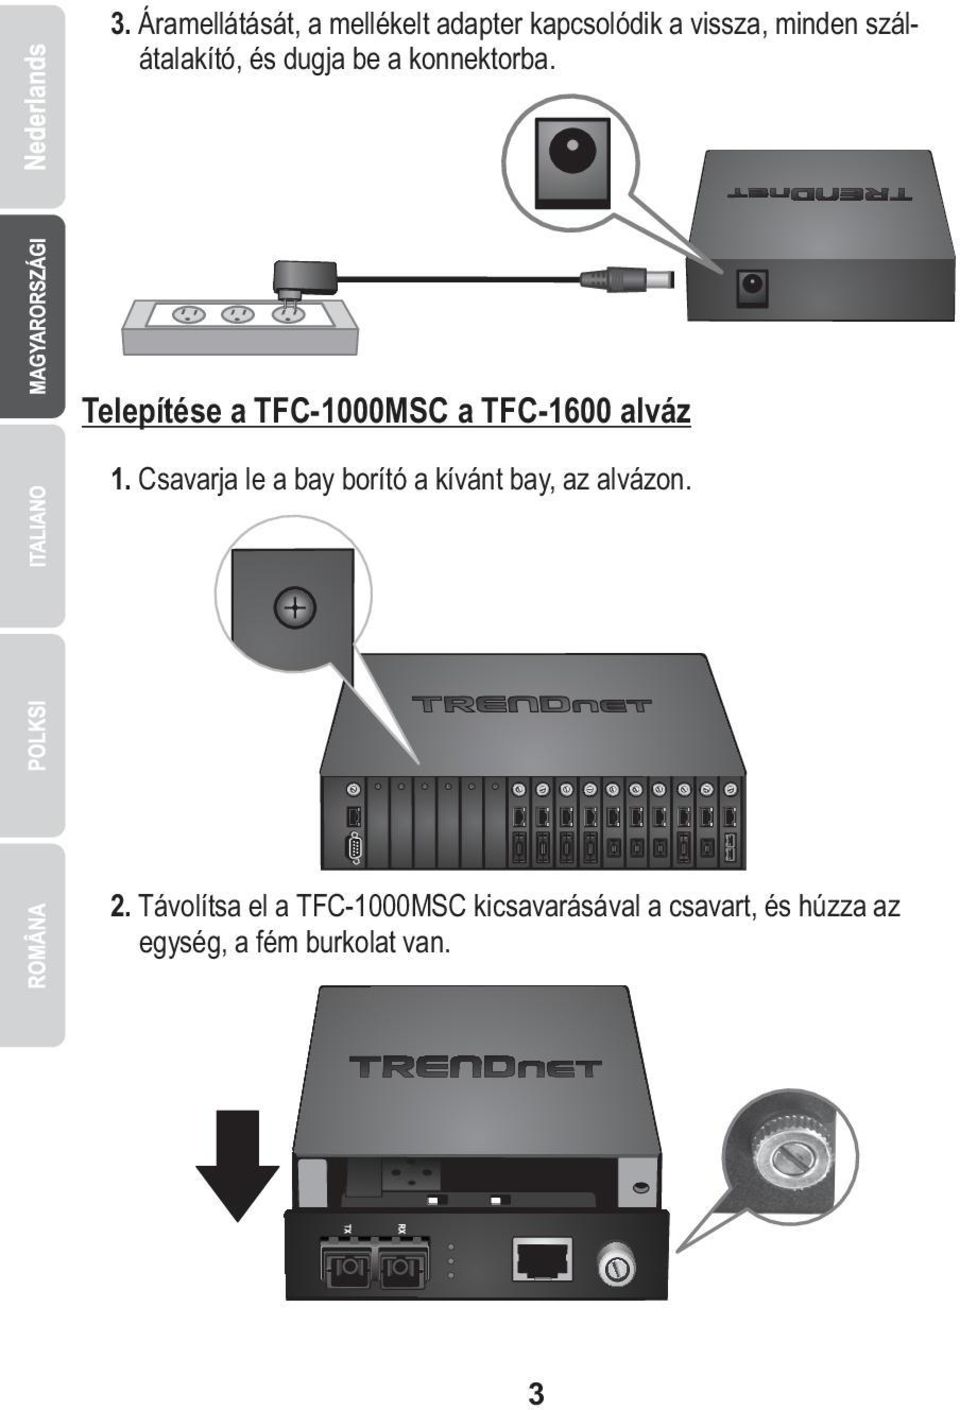 Telepítése a TFC-1000MSC a TFC-1600 alváz 1.